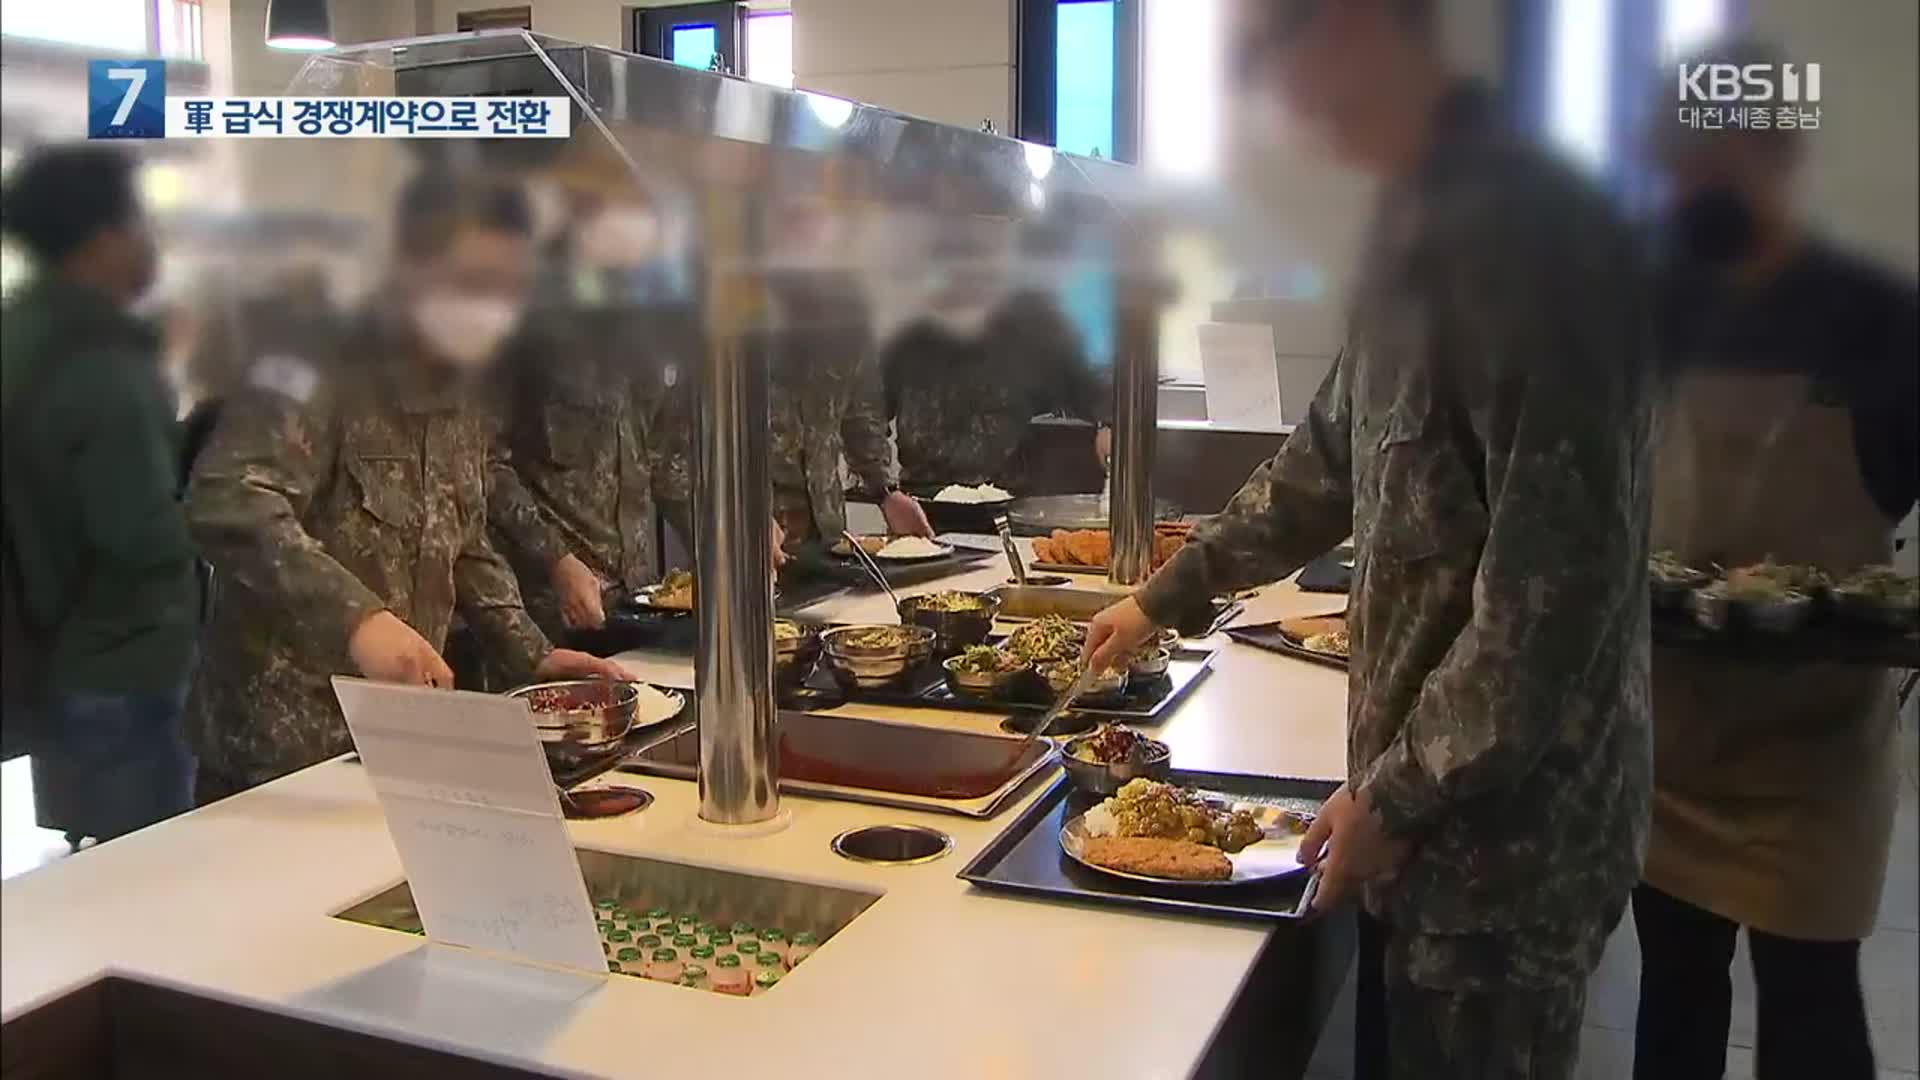 軍 급식, 2025년부터 전량 경쟁조달…식단 편성에 장병 참여